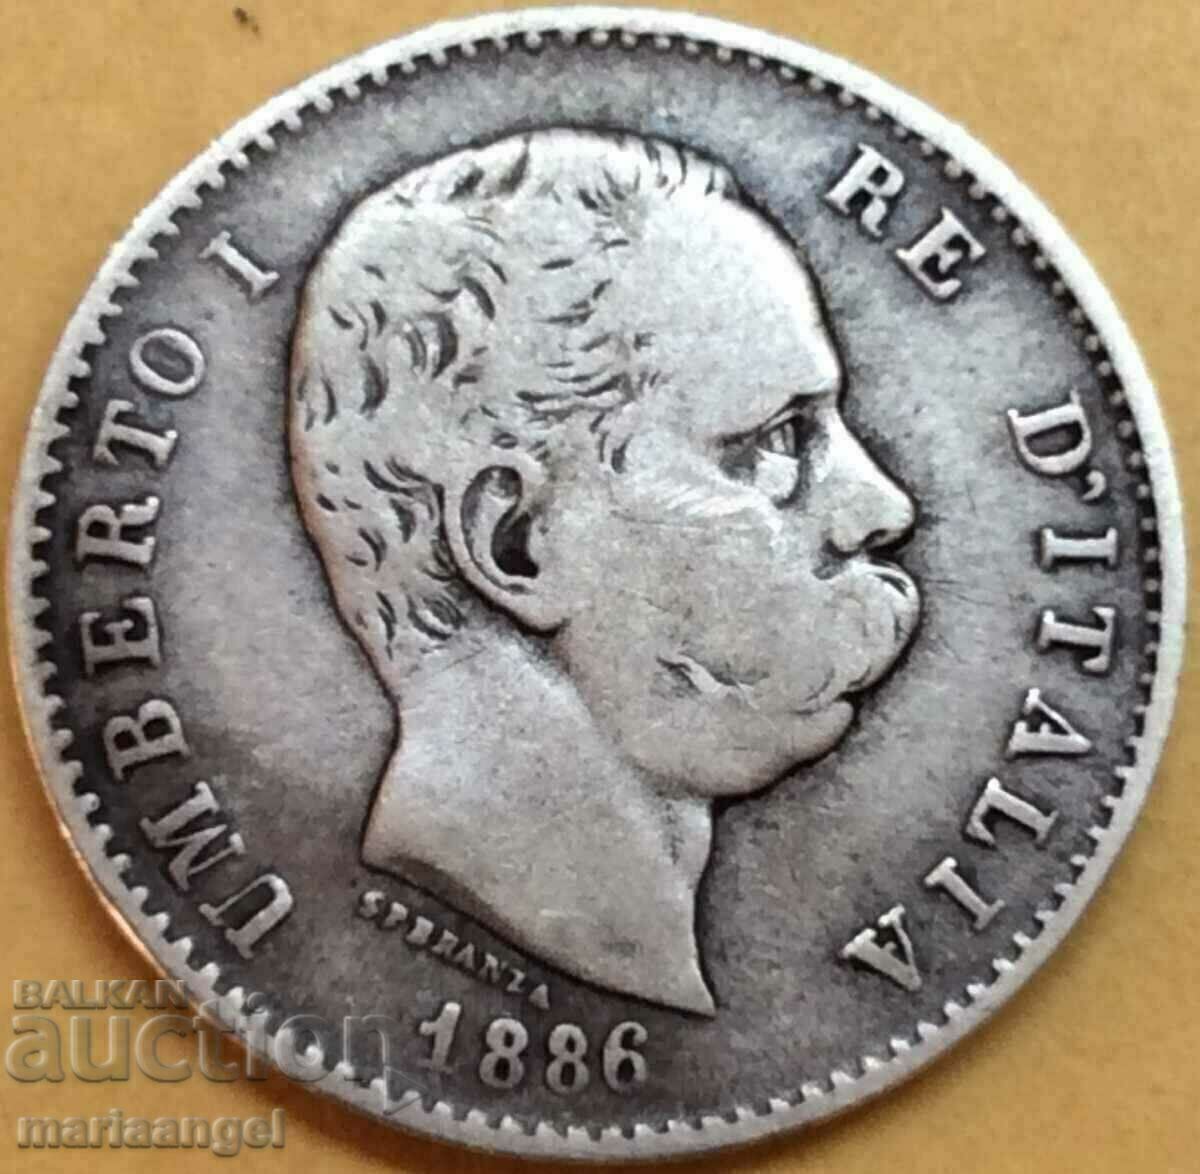 1 pound 1886 Italy Umberto I silver